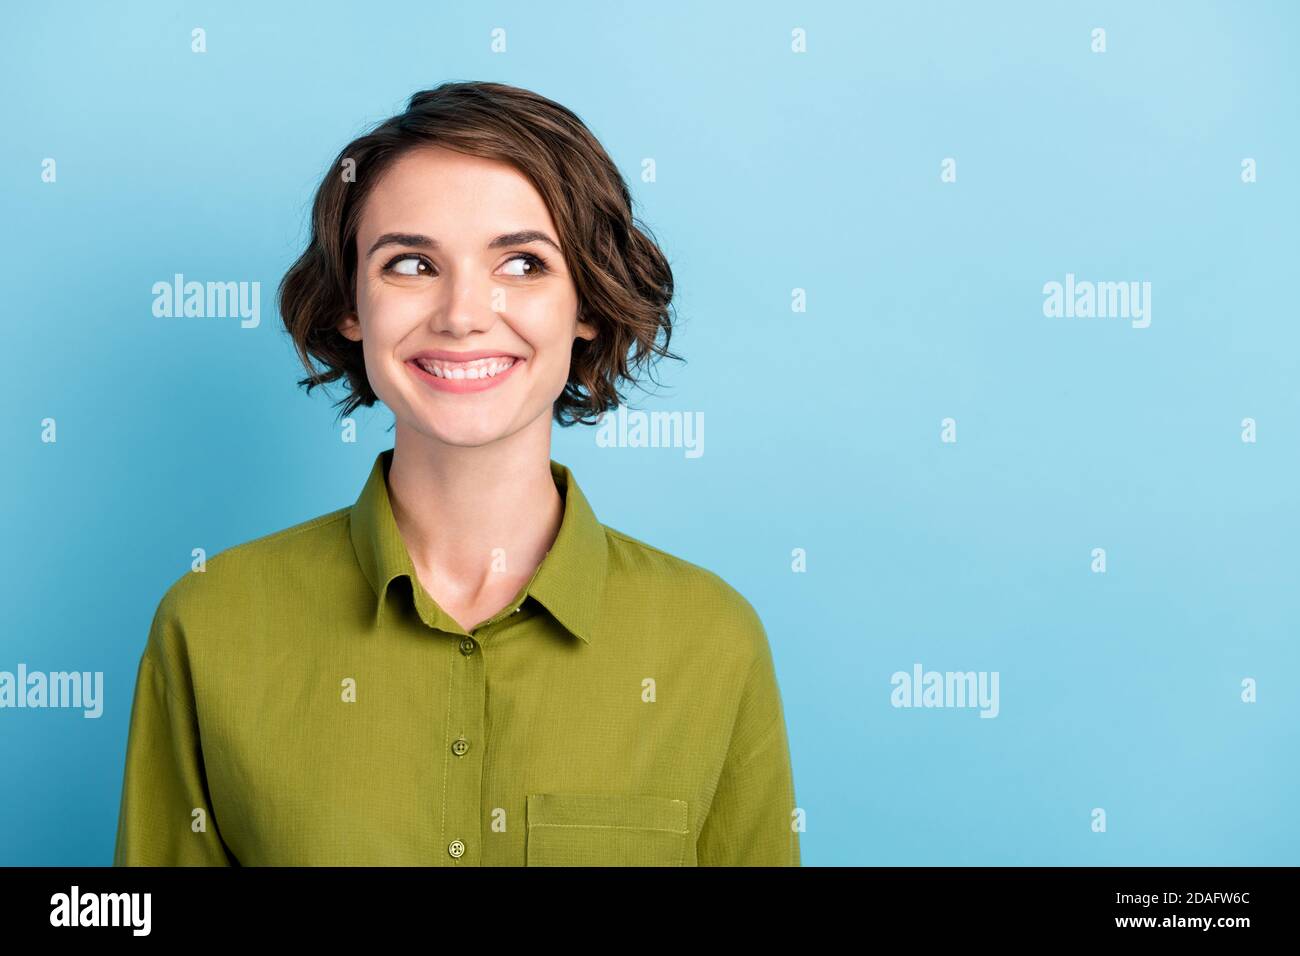 Ritratto fotografico di una divertente studentessa positiva con capelli ondulati e capelli corti indossando camicia verde sorridente ridendo guardando lato isolato su blu Foto Stock